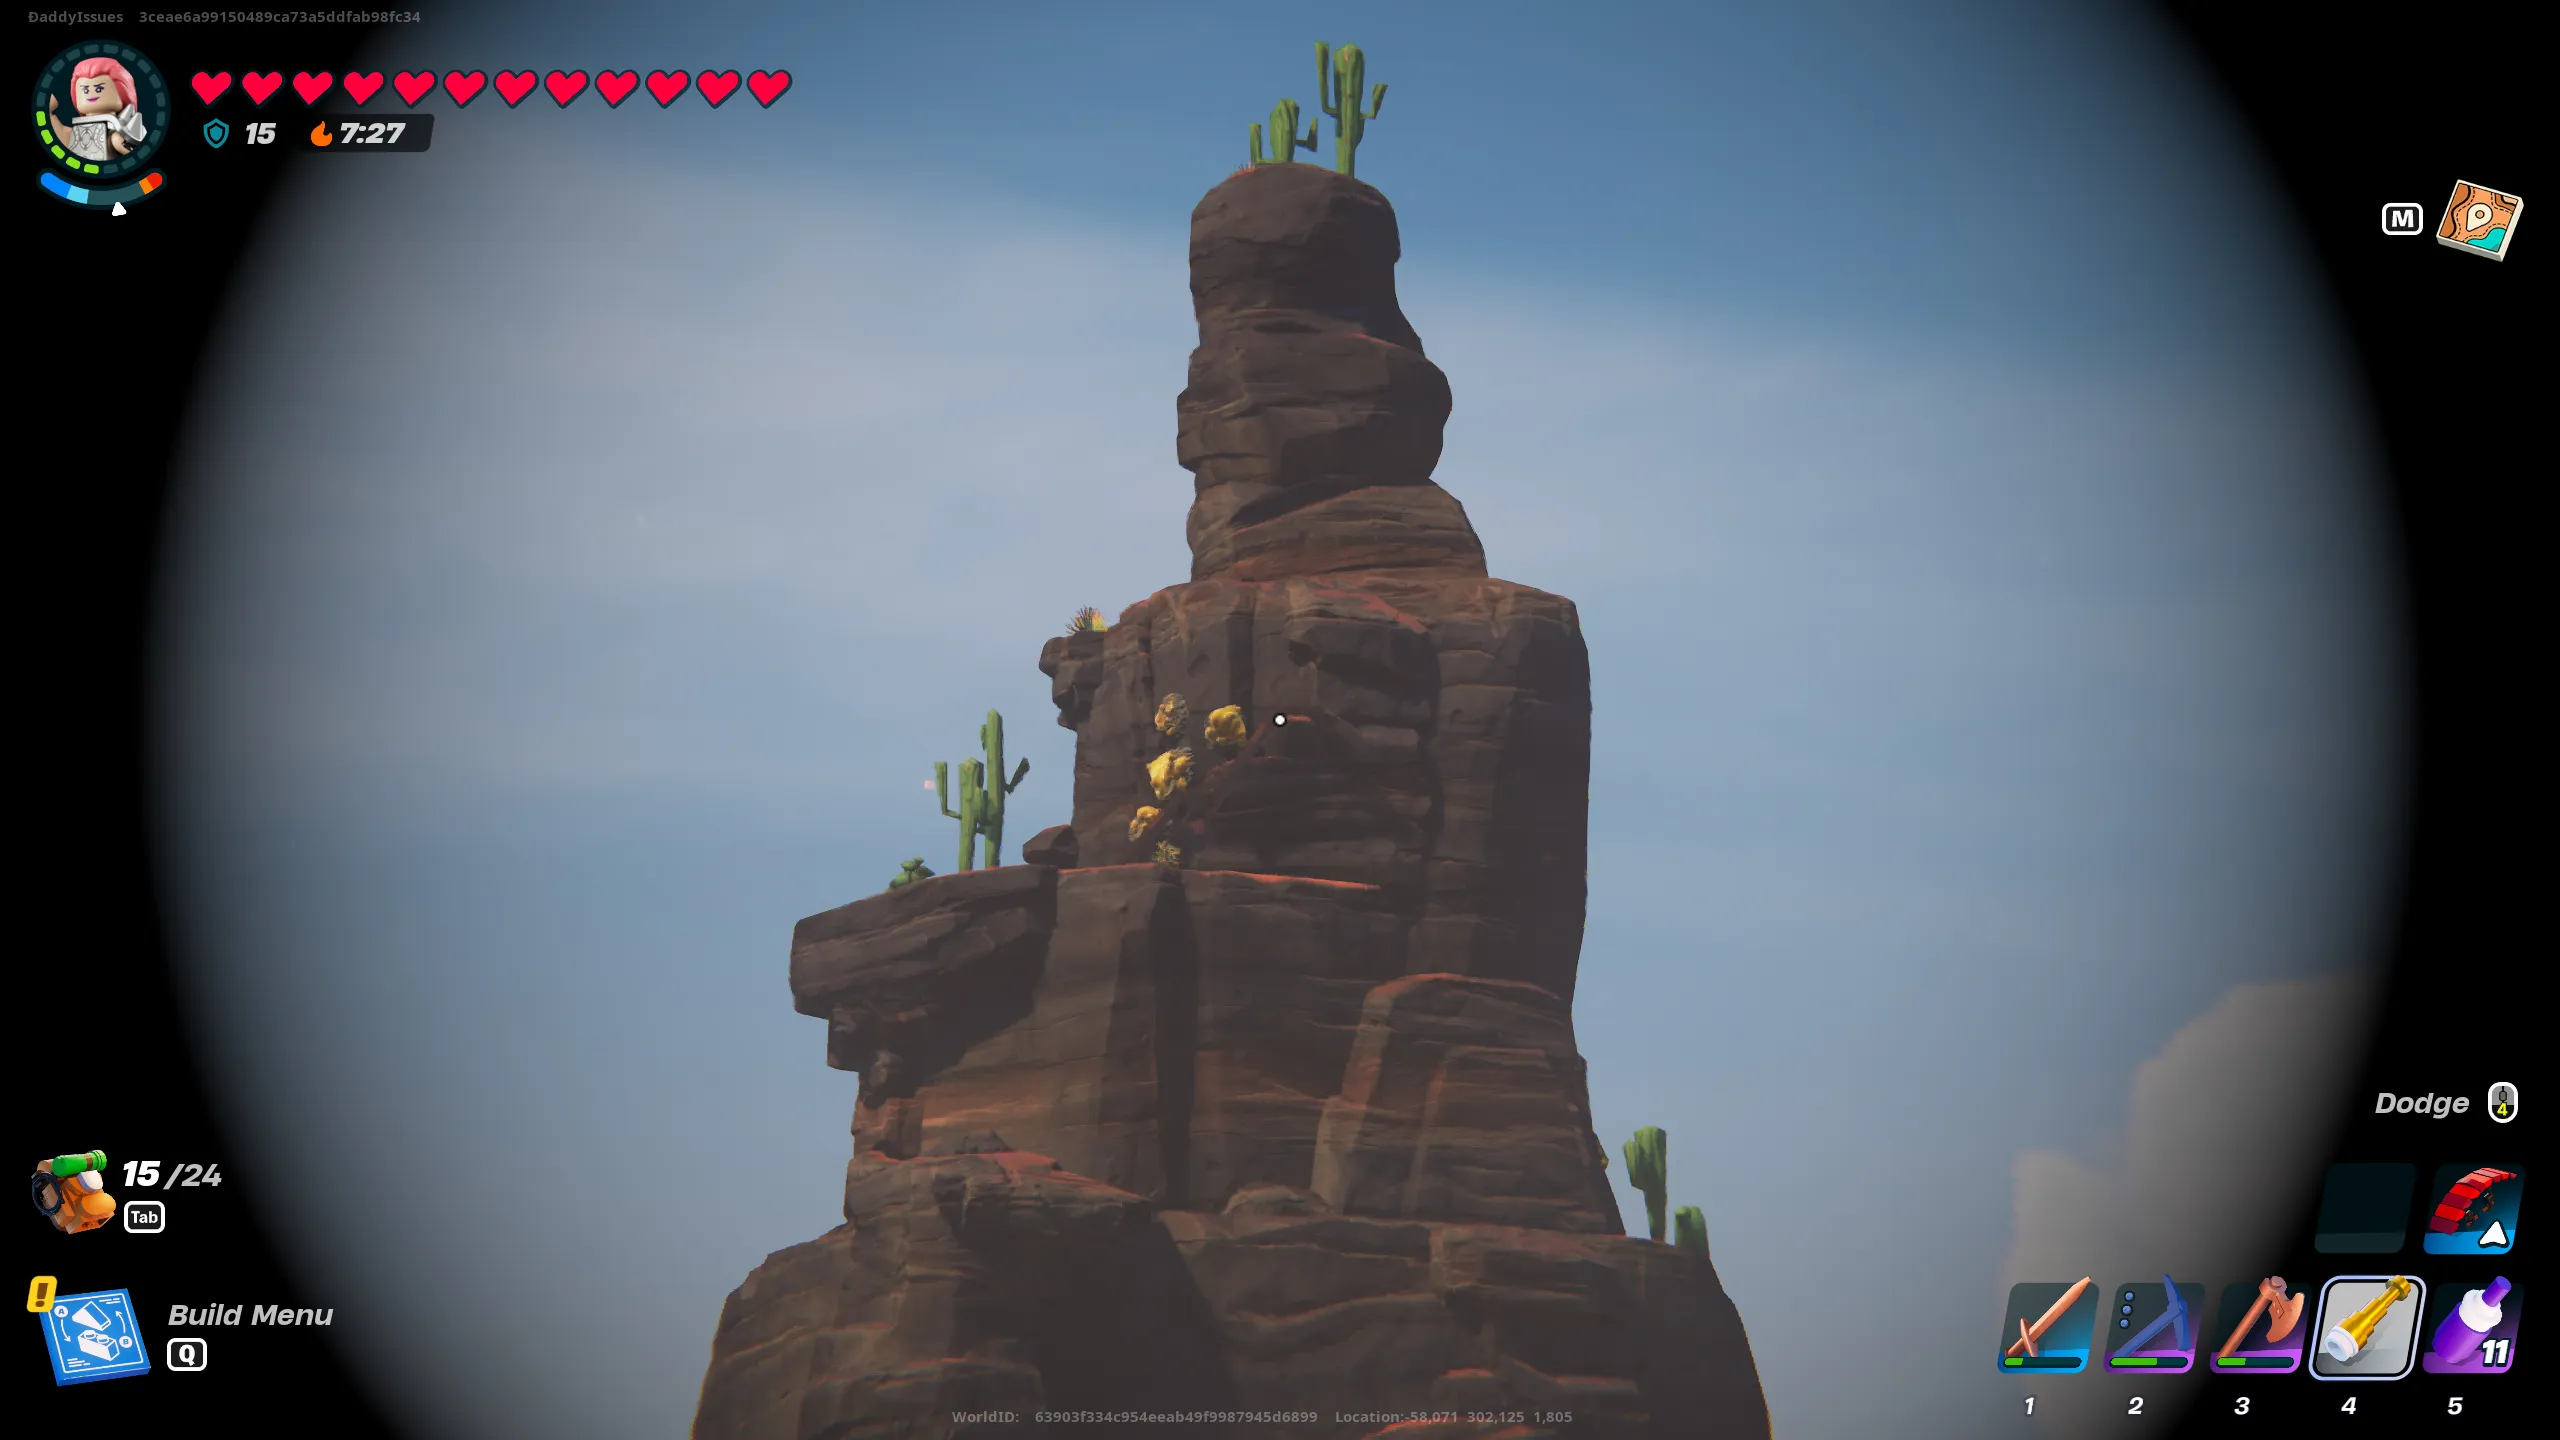 Un'immagine da Lego Fortnite di una montagna ingrandita vista attraverso il cannocchiale.